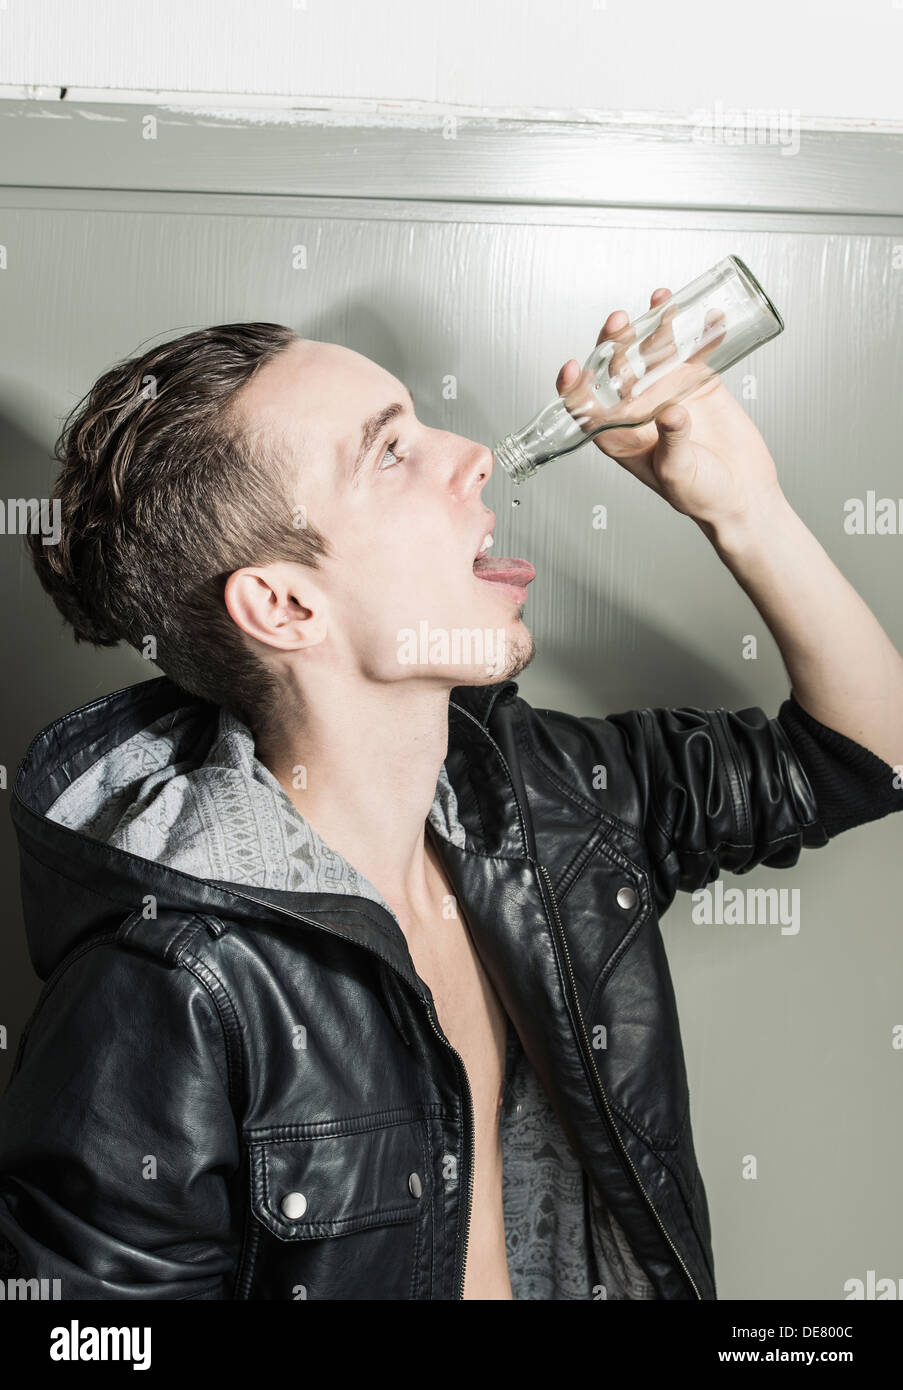 Profil-Porträt eines jungen Mannes, den letzten Tropfen aus einer leeren Flasche trinken Stockfoto